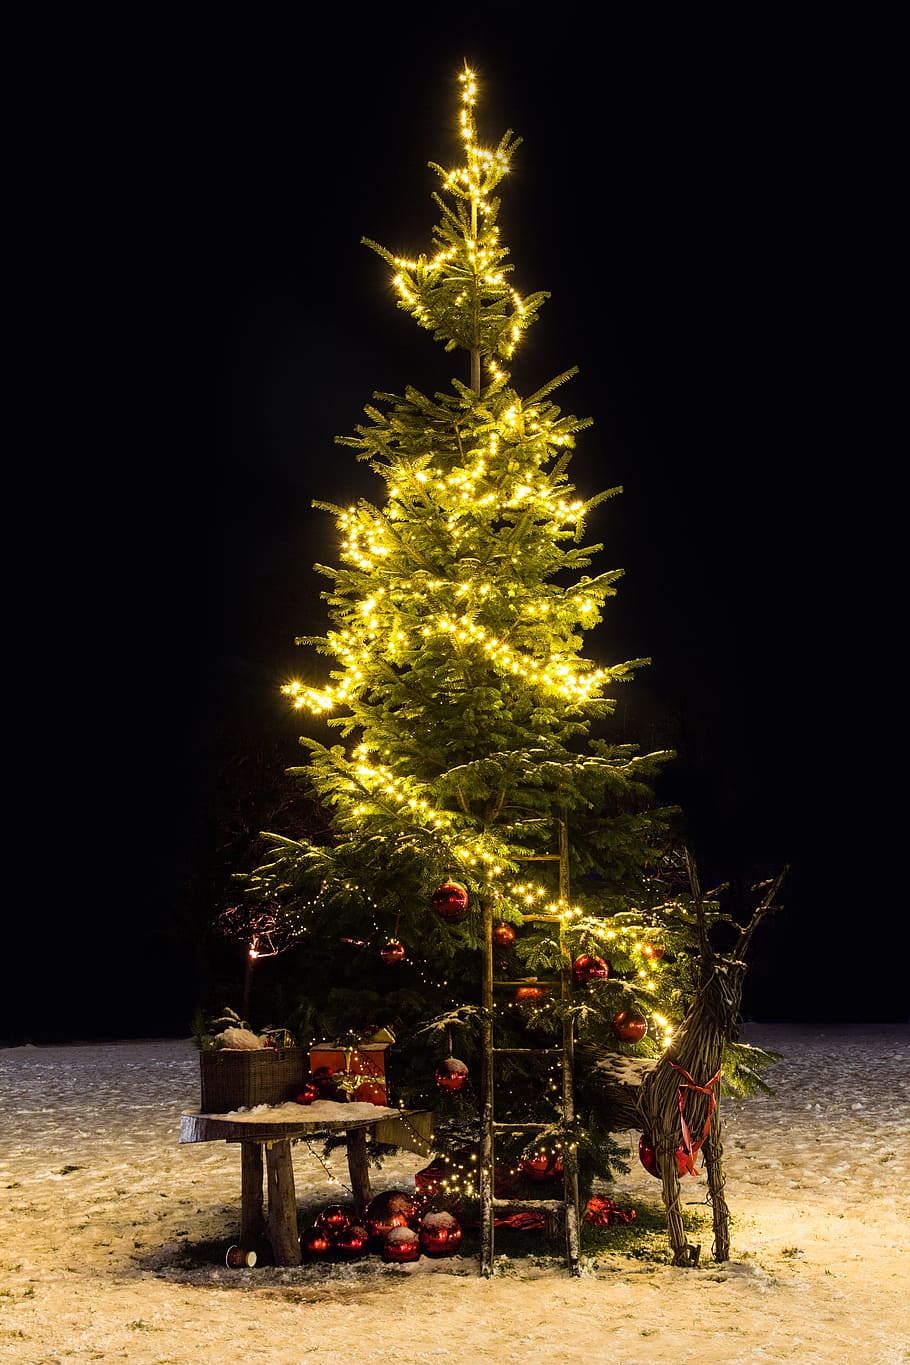 크리스마스 트리, 문자열 조명, 크리스마스, 크리스마스 장식, 크리스마스 시간, 리터 테켓, 크리스마스 장식품, 축하, 나무, 휴일